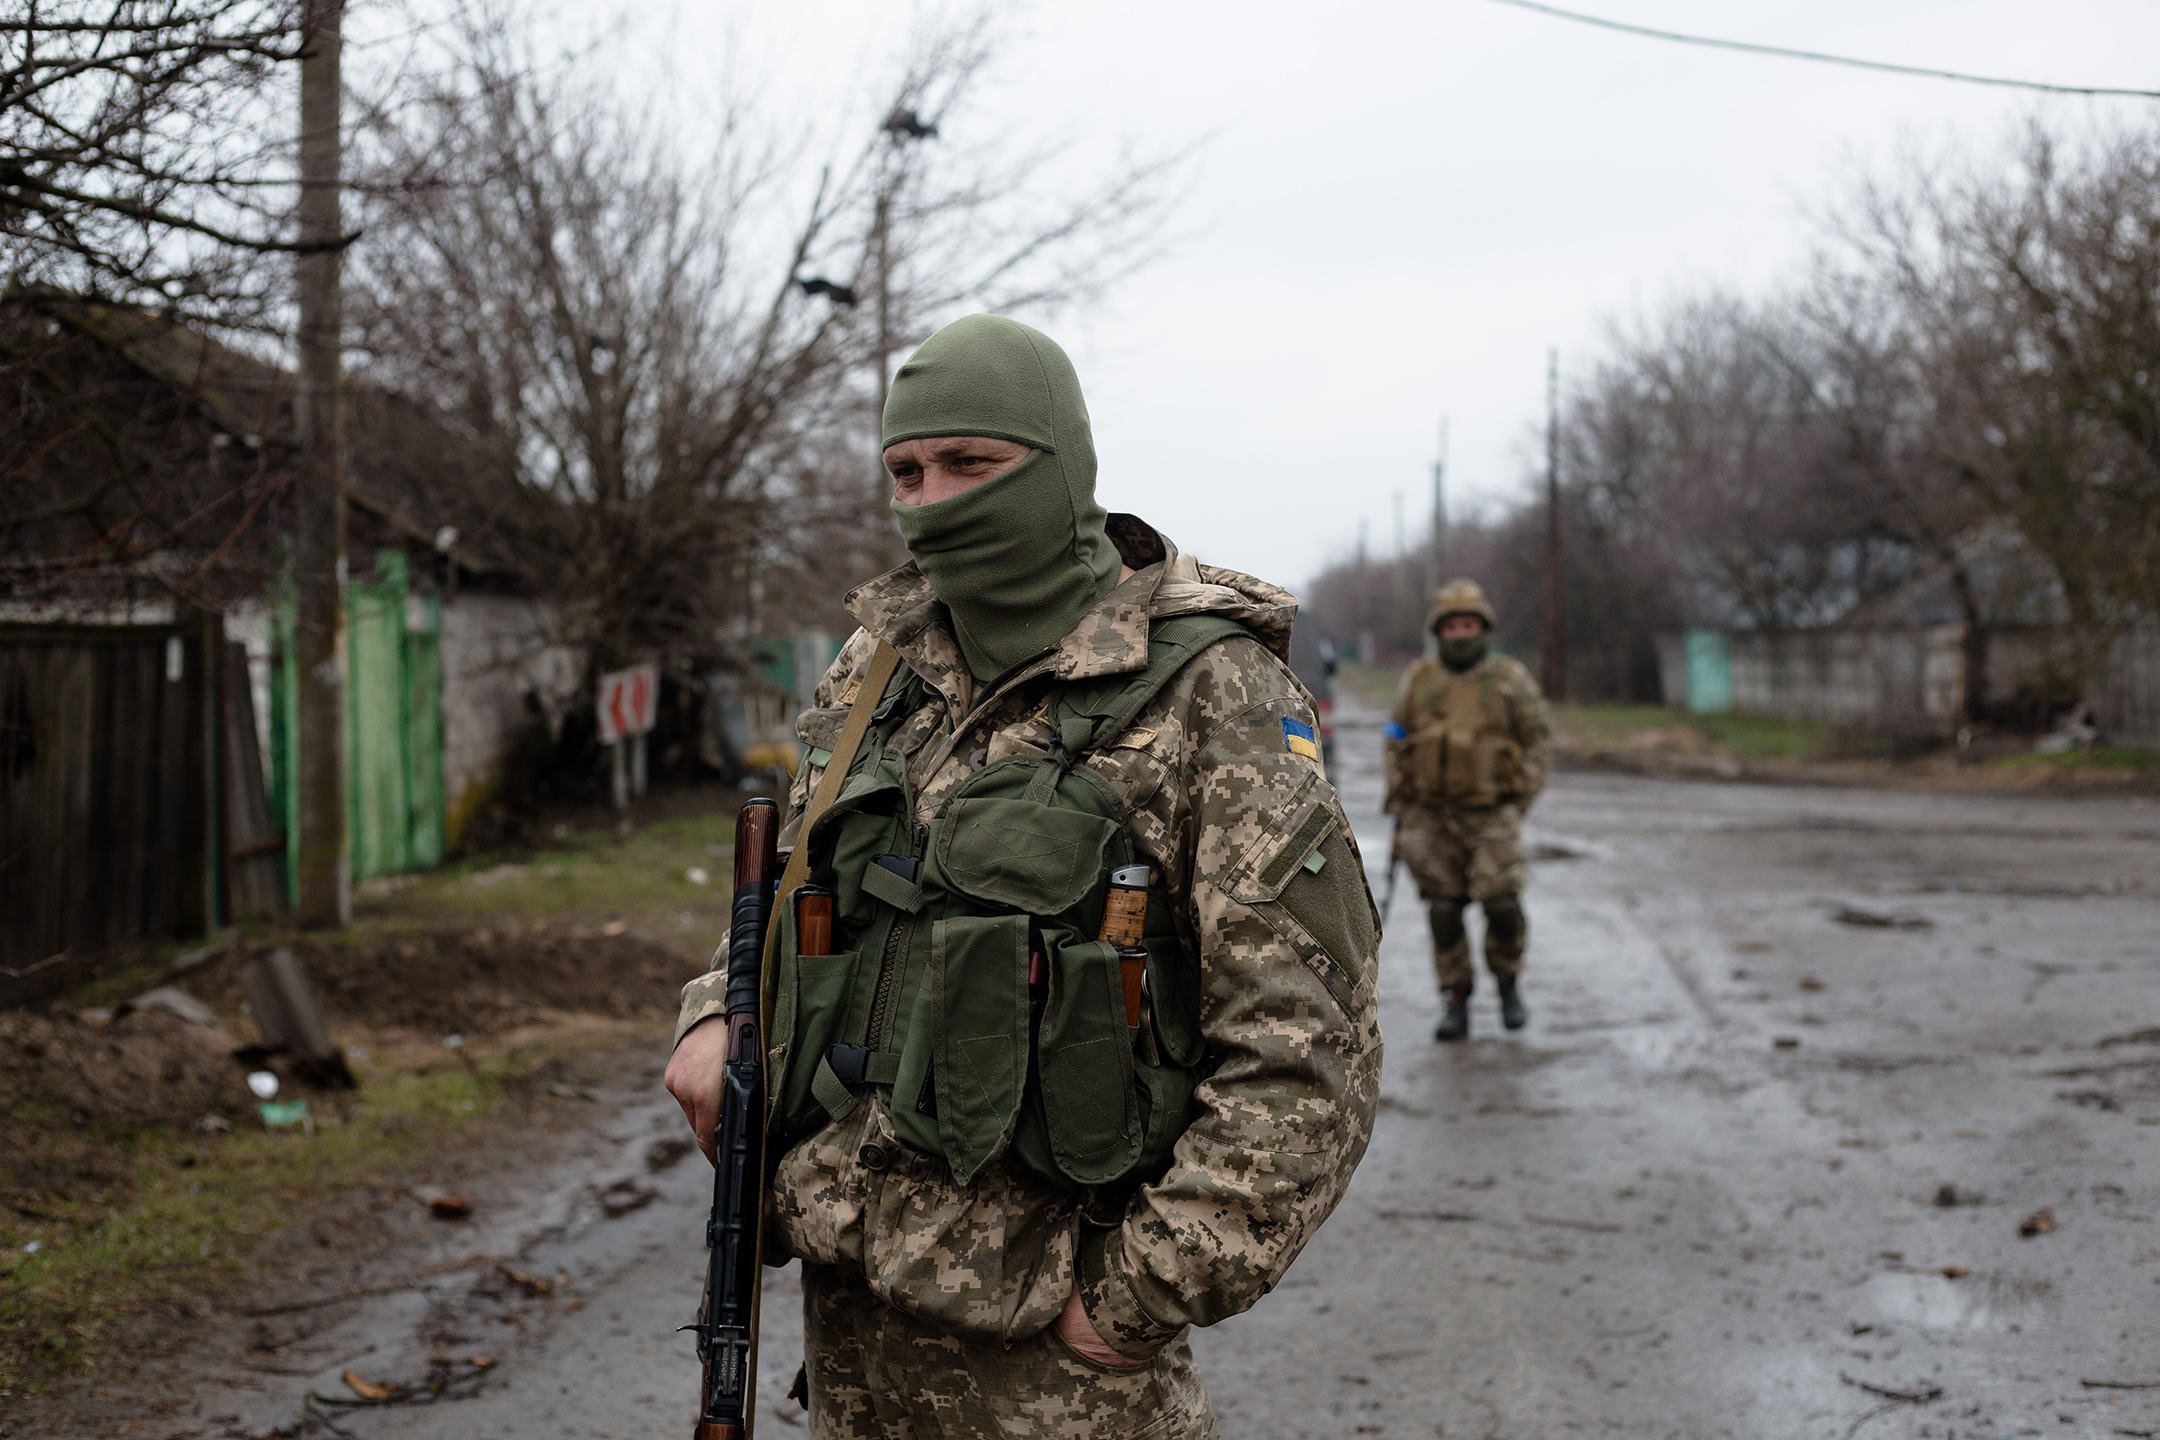 Two men in camouflage uniforms patrol an empty street